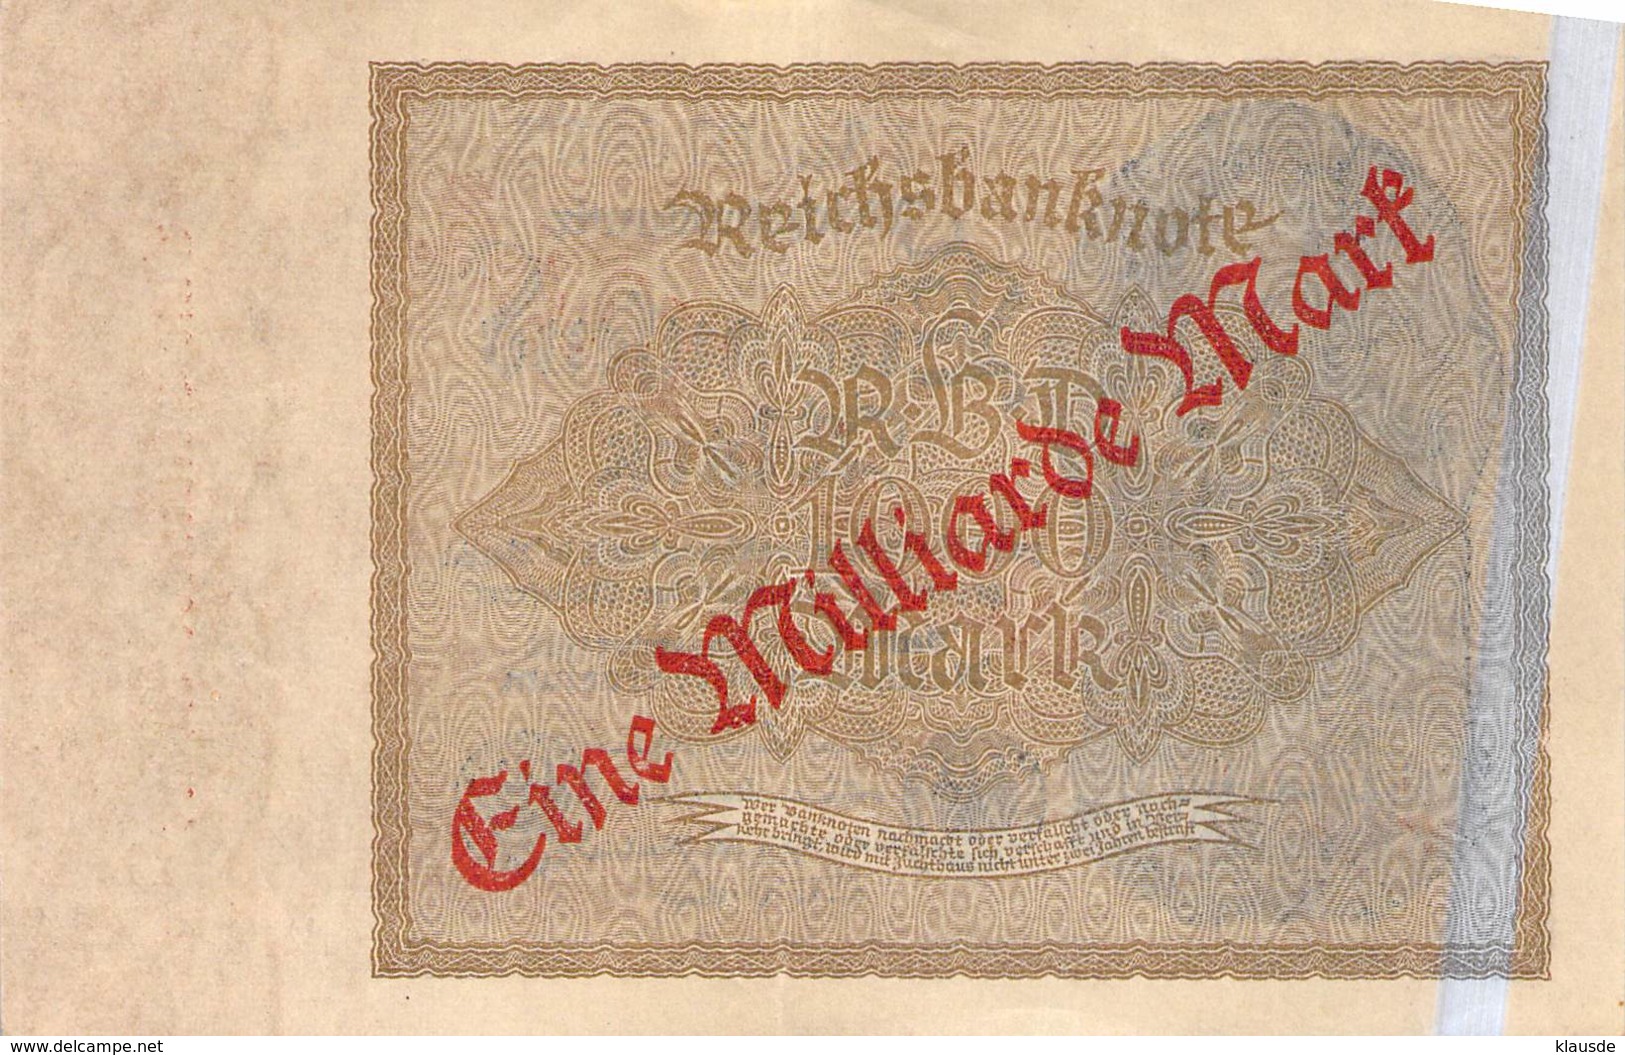 1 Milliarde Mark Überdruckprovisorium 1922 Reichsbanbknote - 1 Milliarde Mark